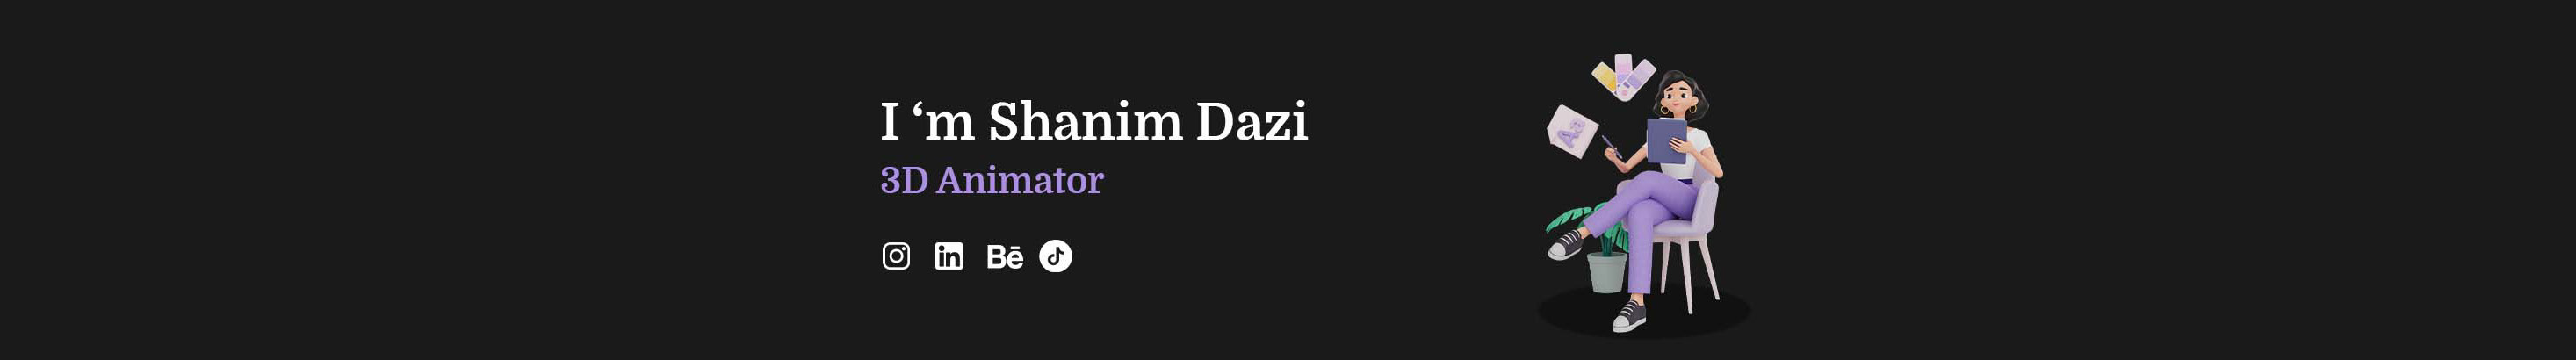 Баннер профиля Shanim Dazi